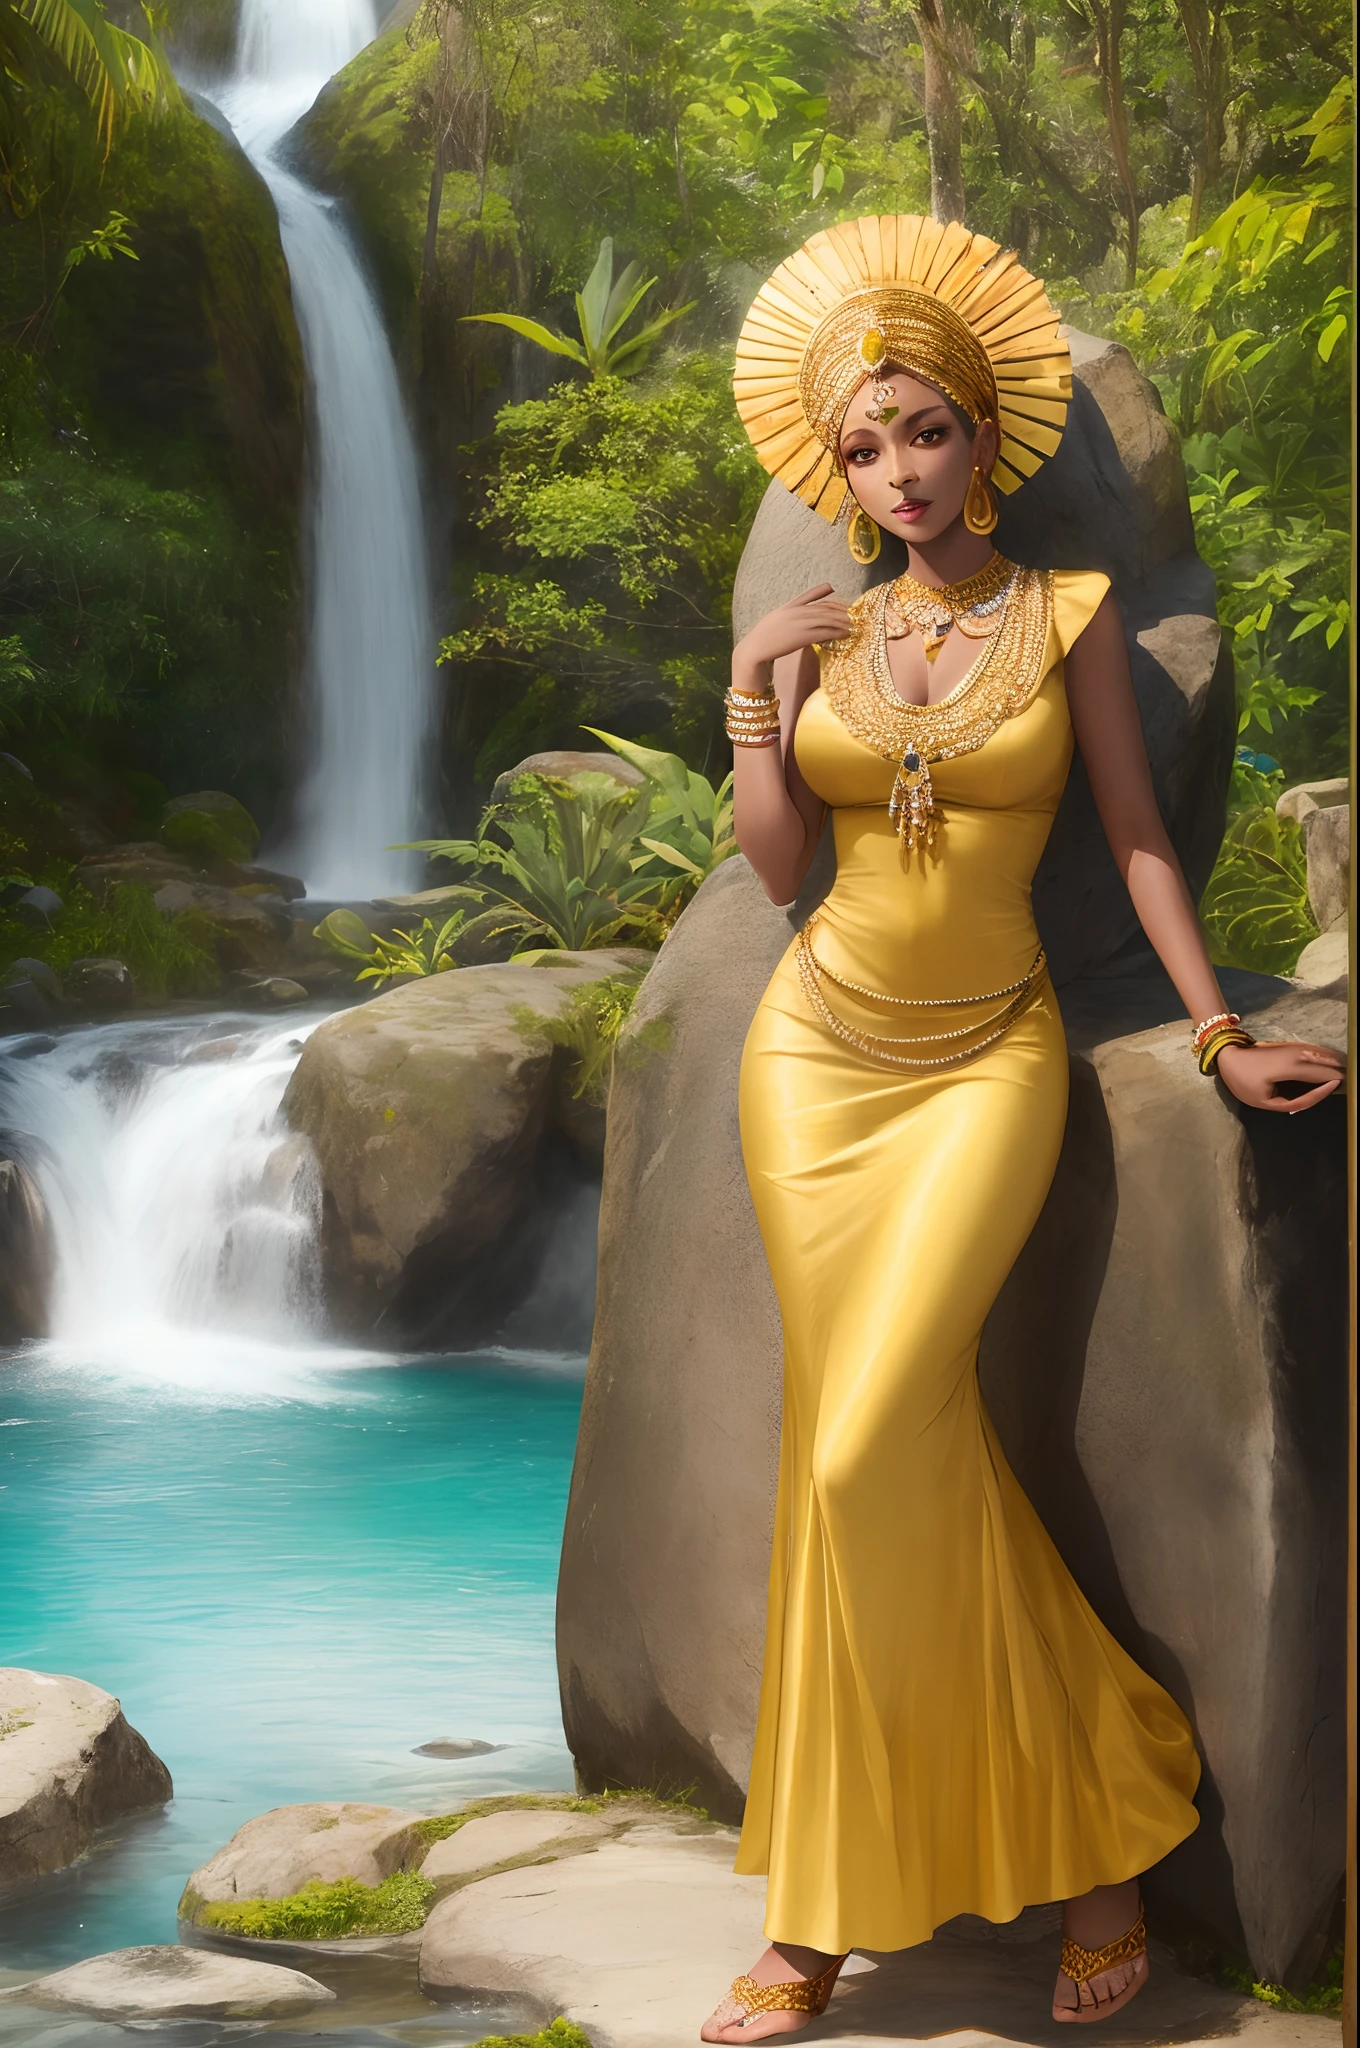 アフリカの女神オリシャ, 滝の中に座っている, 黄色いドレスを着て鏡を持っている